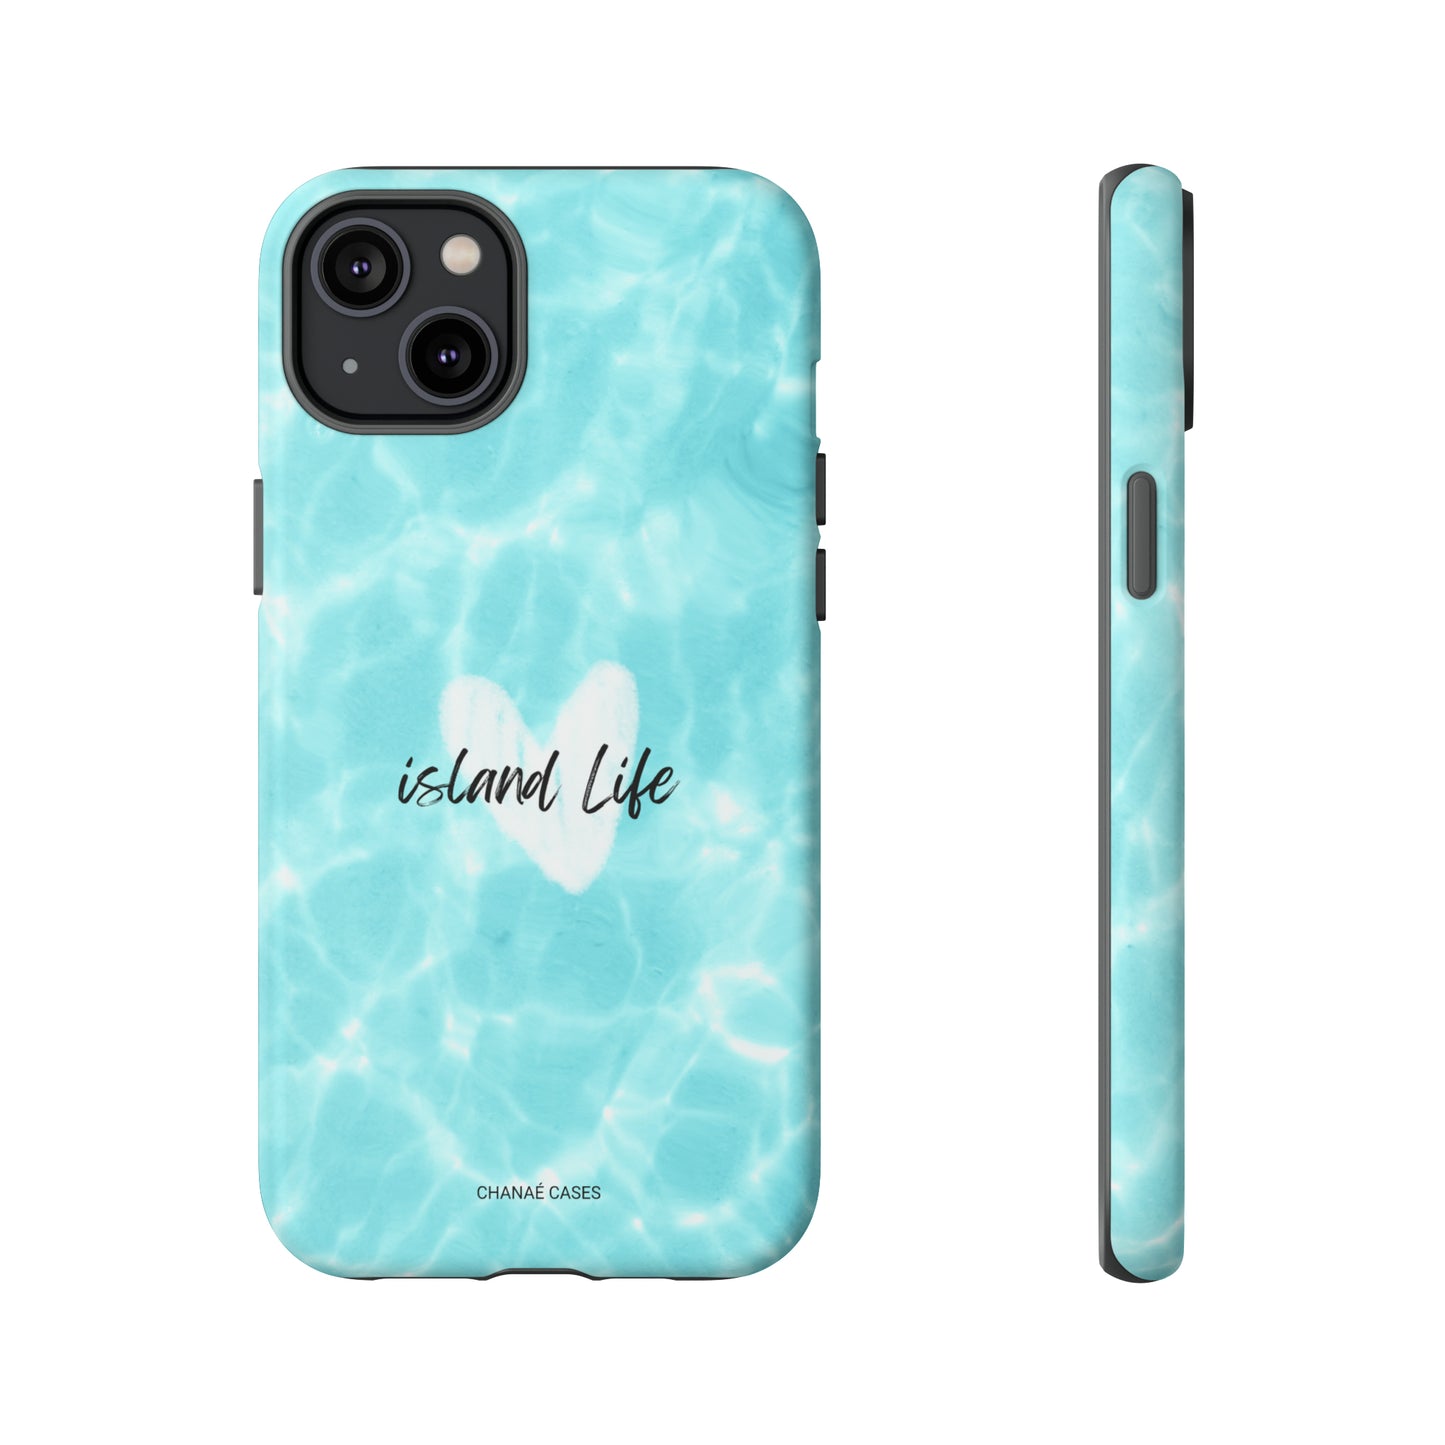 Island Life Lover iPhone "Tough" Case (Ocean Blue)